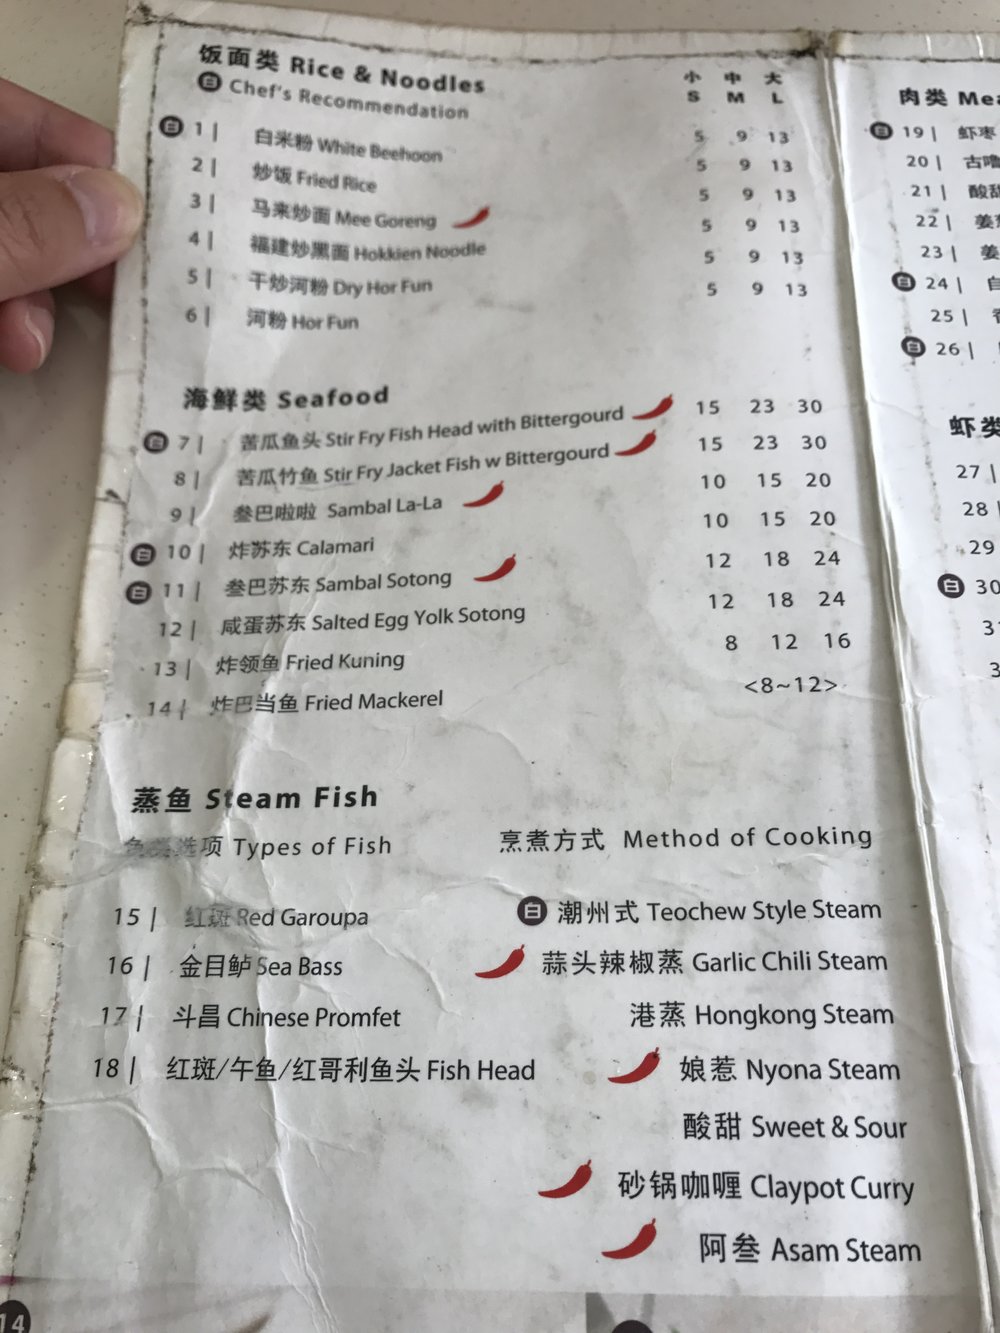 White Restaurant's menu